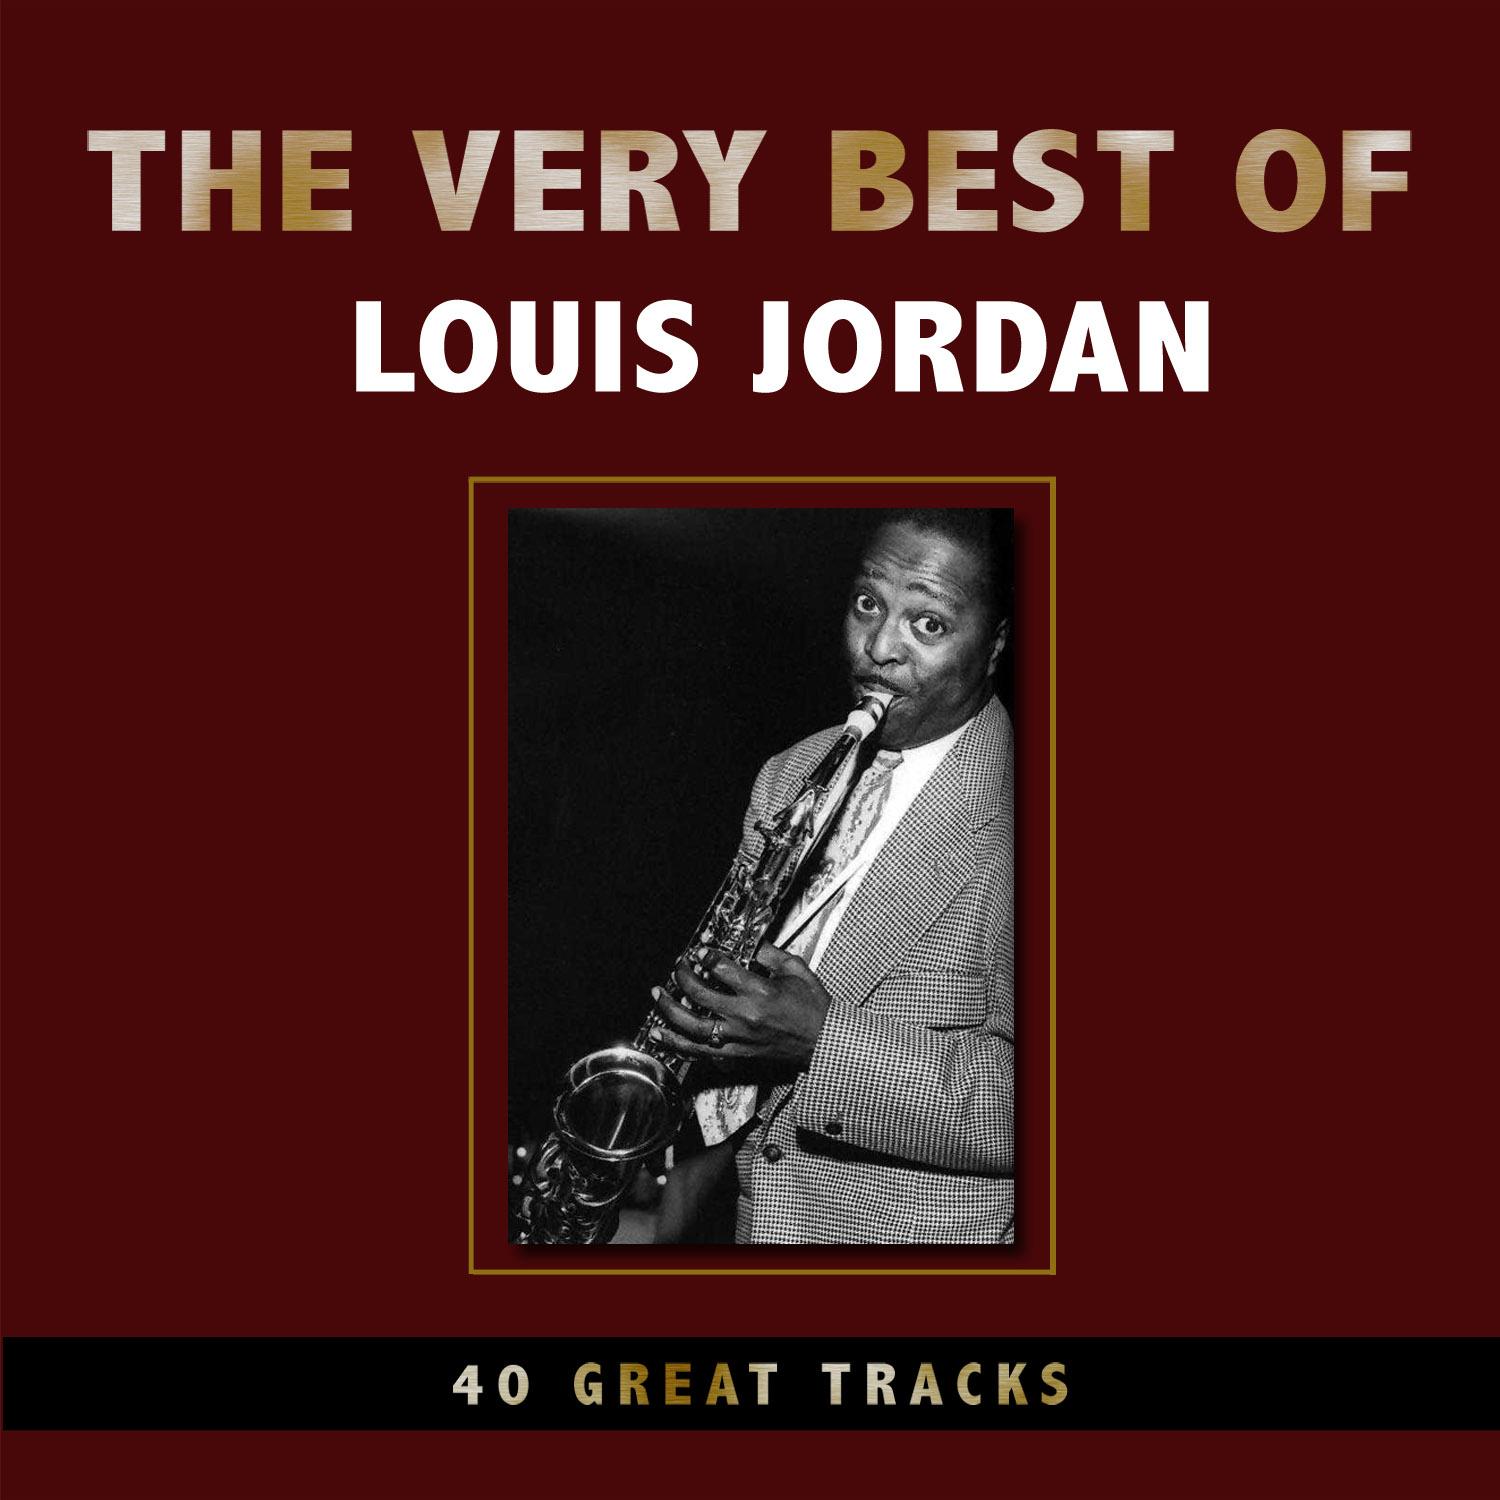 The Very Best of Louis Jordan